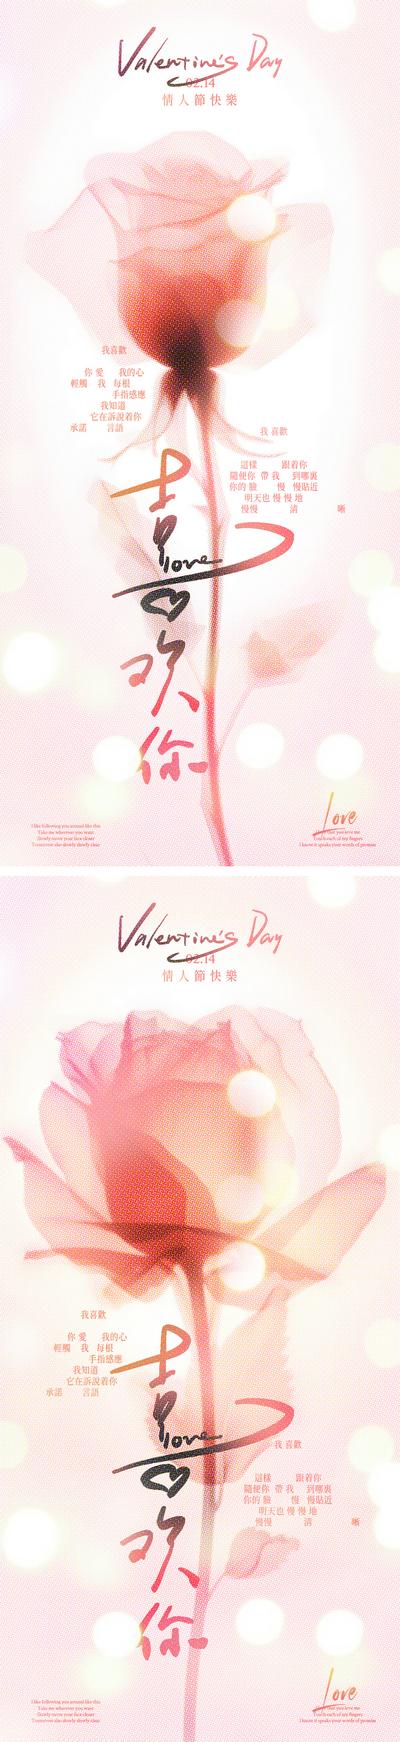 南门网 广告 海报 公历节日 情人节 214 玫瑰 光斑 浪漫 光影 简约 手写字 爱情 花朵 喜欢你